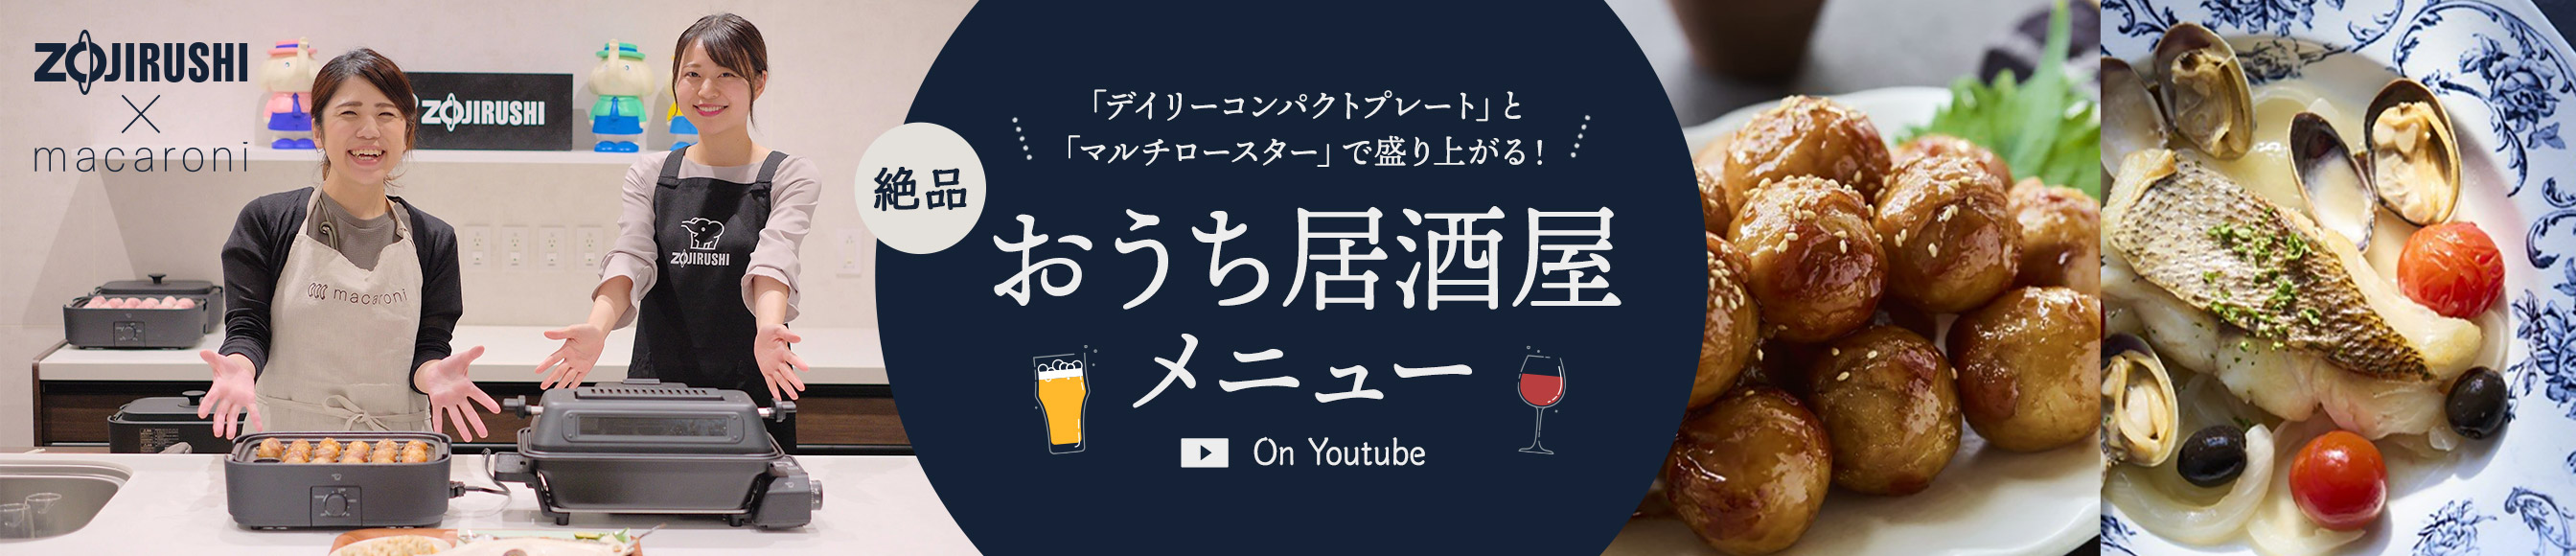 絶品 おうち居酒屋メニュー On YouTube